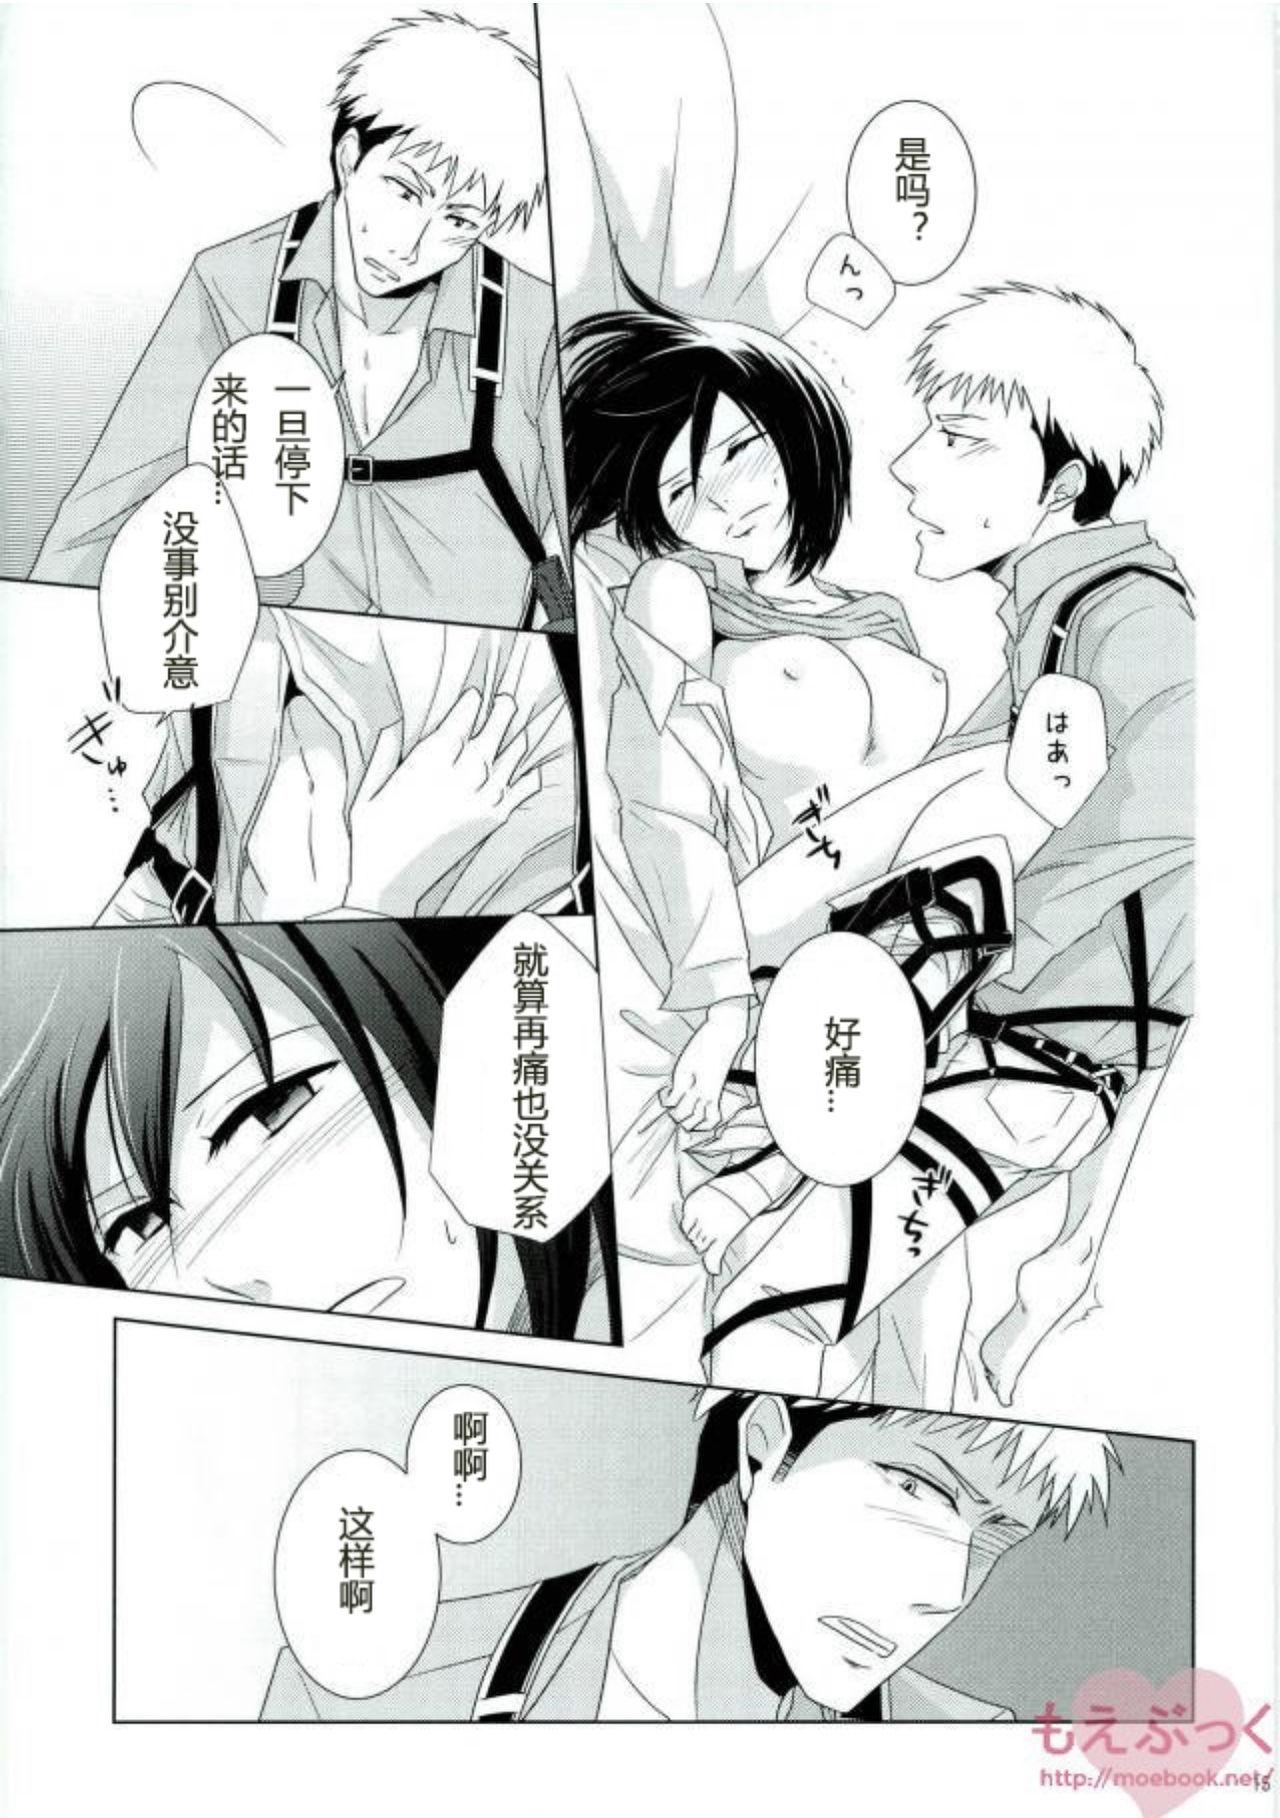 Bribe Furerarenai | 不能触碰 - Shingeki no kyojin | attack on titan Ex Girlfriend - Page 13